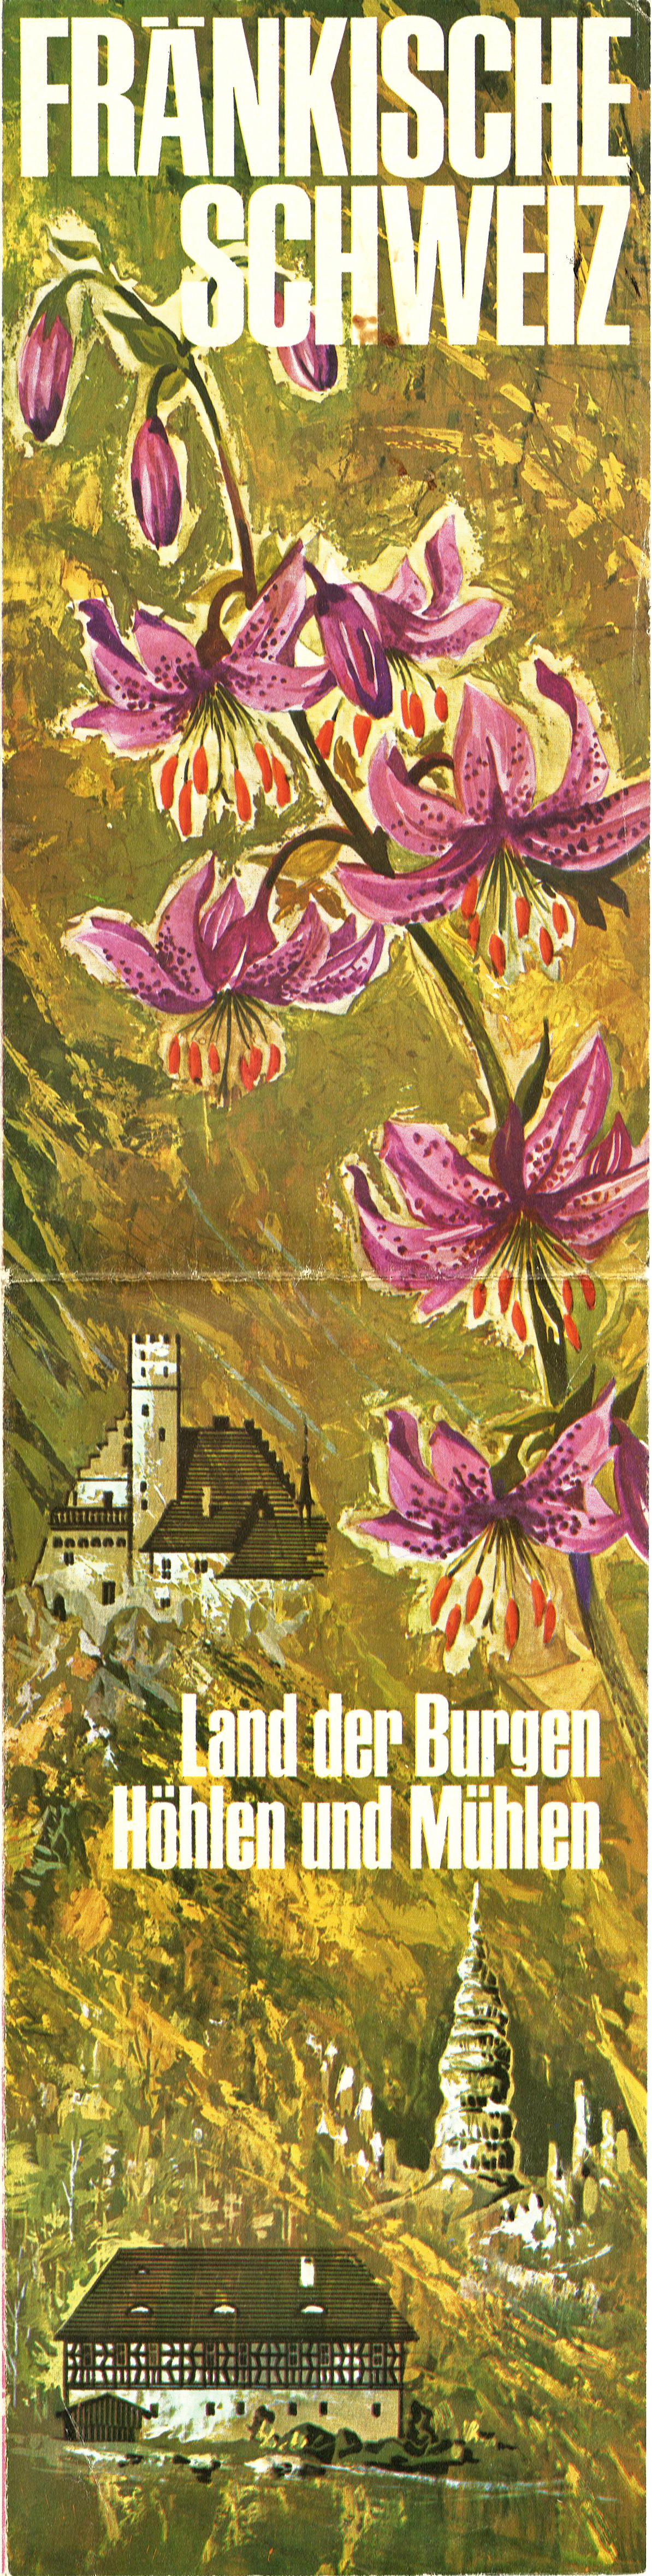 Abb. 2a: Titelbild des Prospektes von 1967